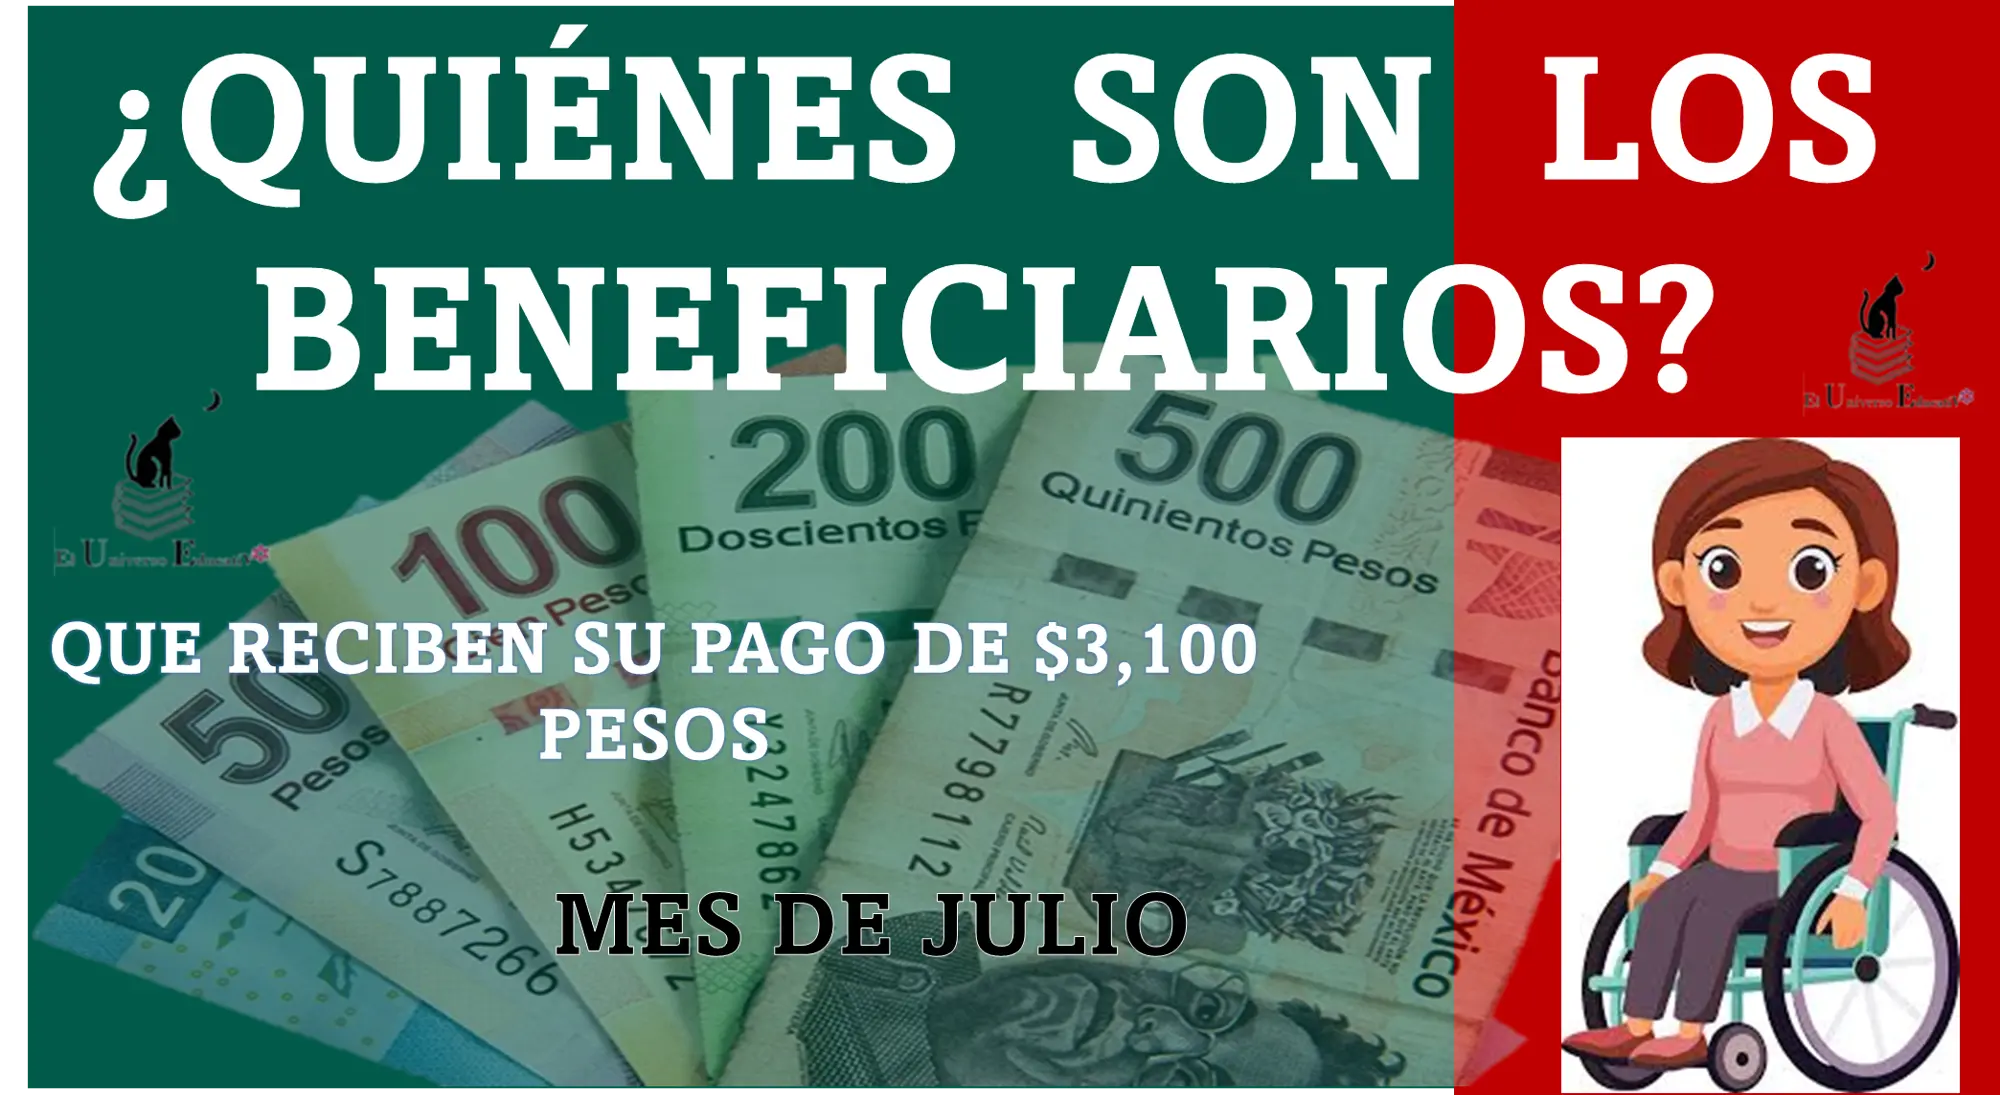 ¿QUIÉNES SON LOS BENEFICIARIOS QUE RECIBEN SU PAGO DE $3,100 PESOS EN ESTE MES DE JULIO? | PENSIÓN BIENESTAR